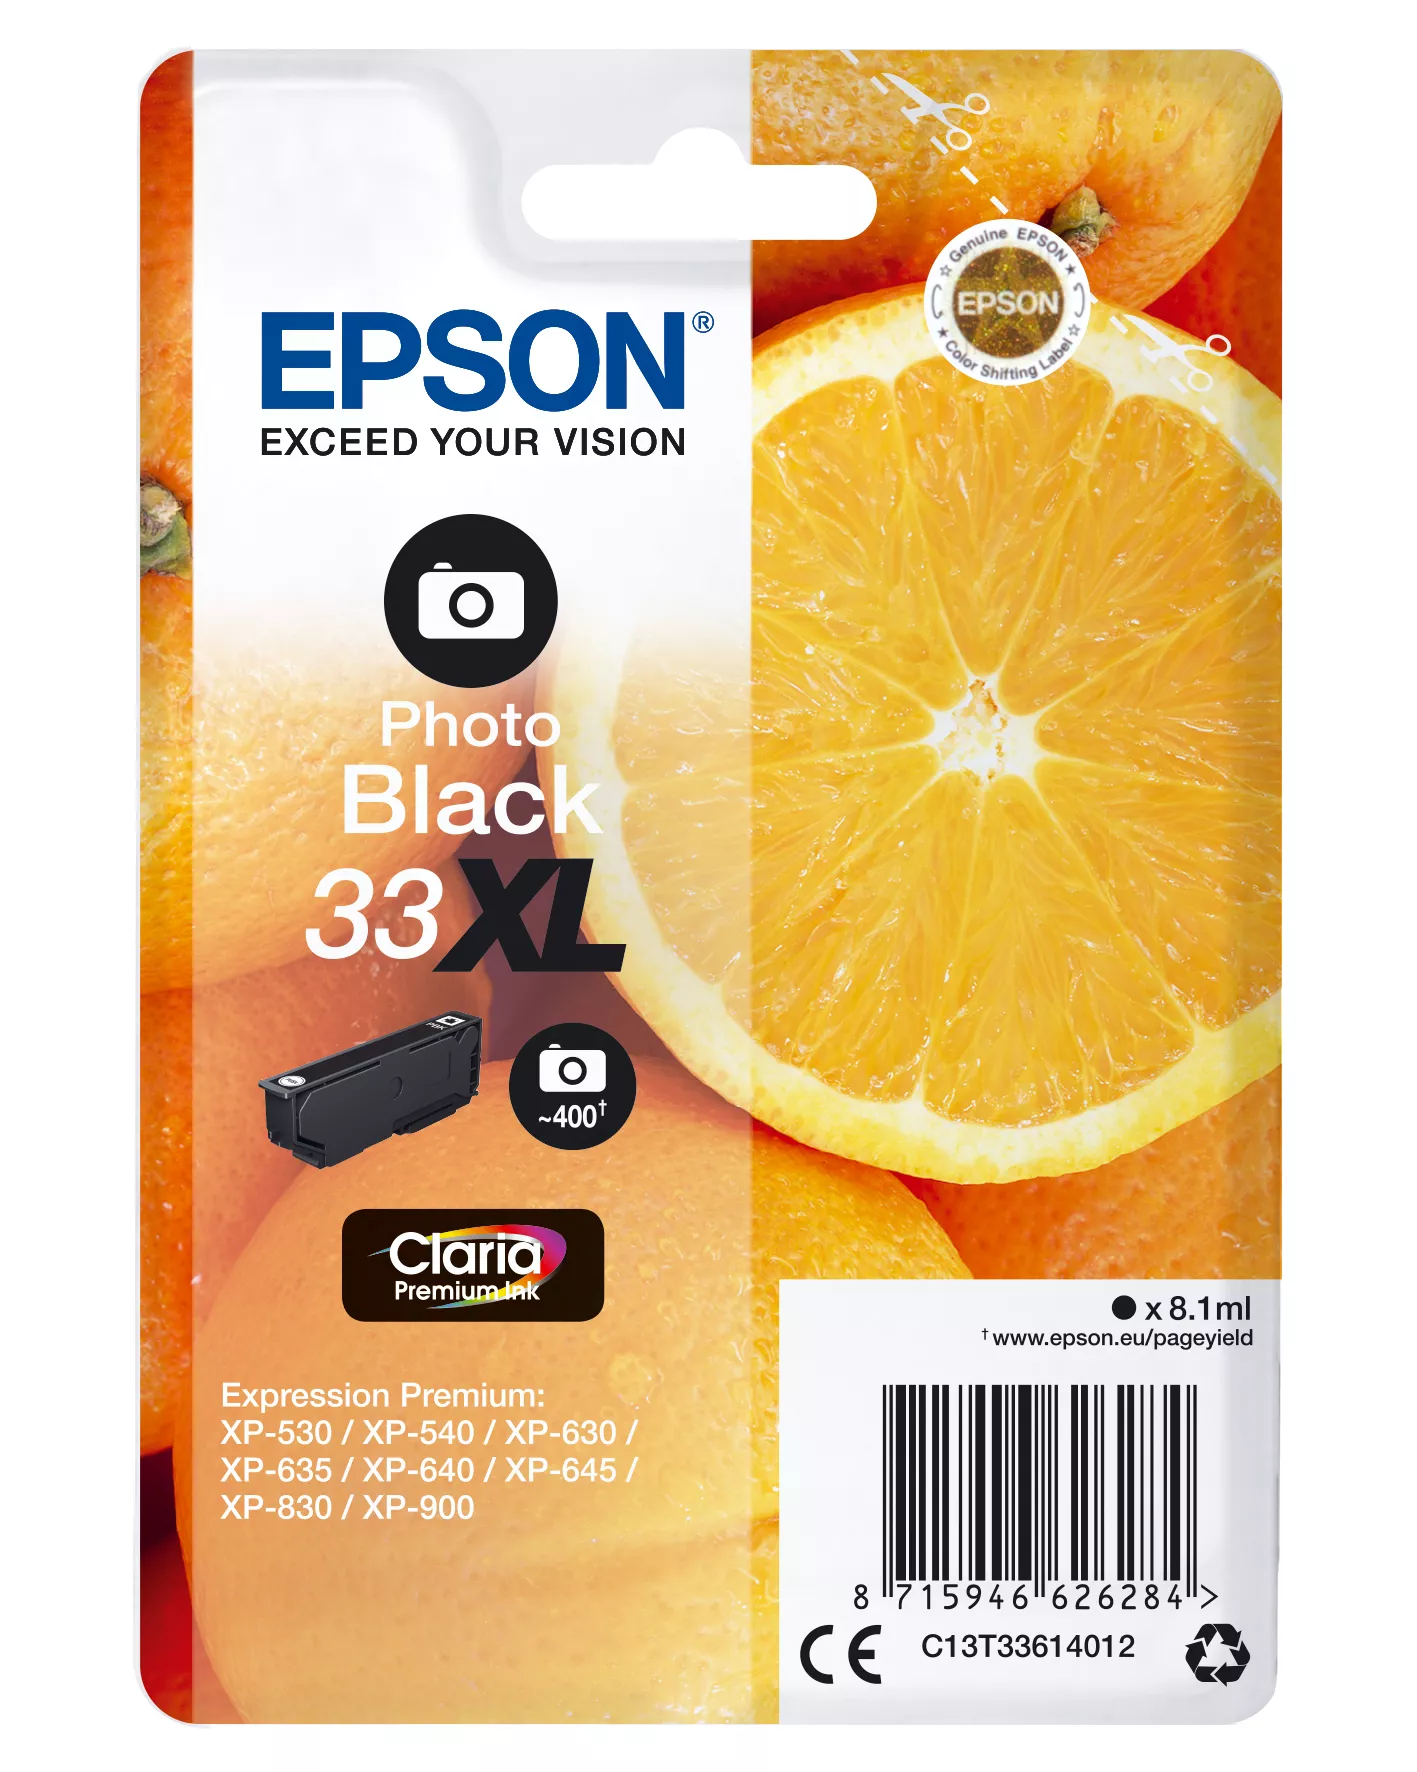 Achat EPSON Cartouche Oranges Encre Claria Premium Noir Photo au meilleur prix